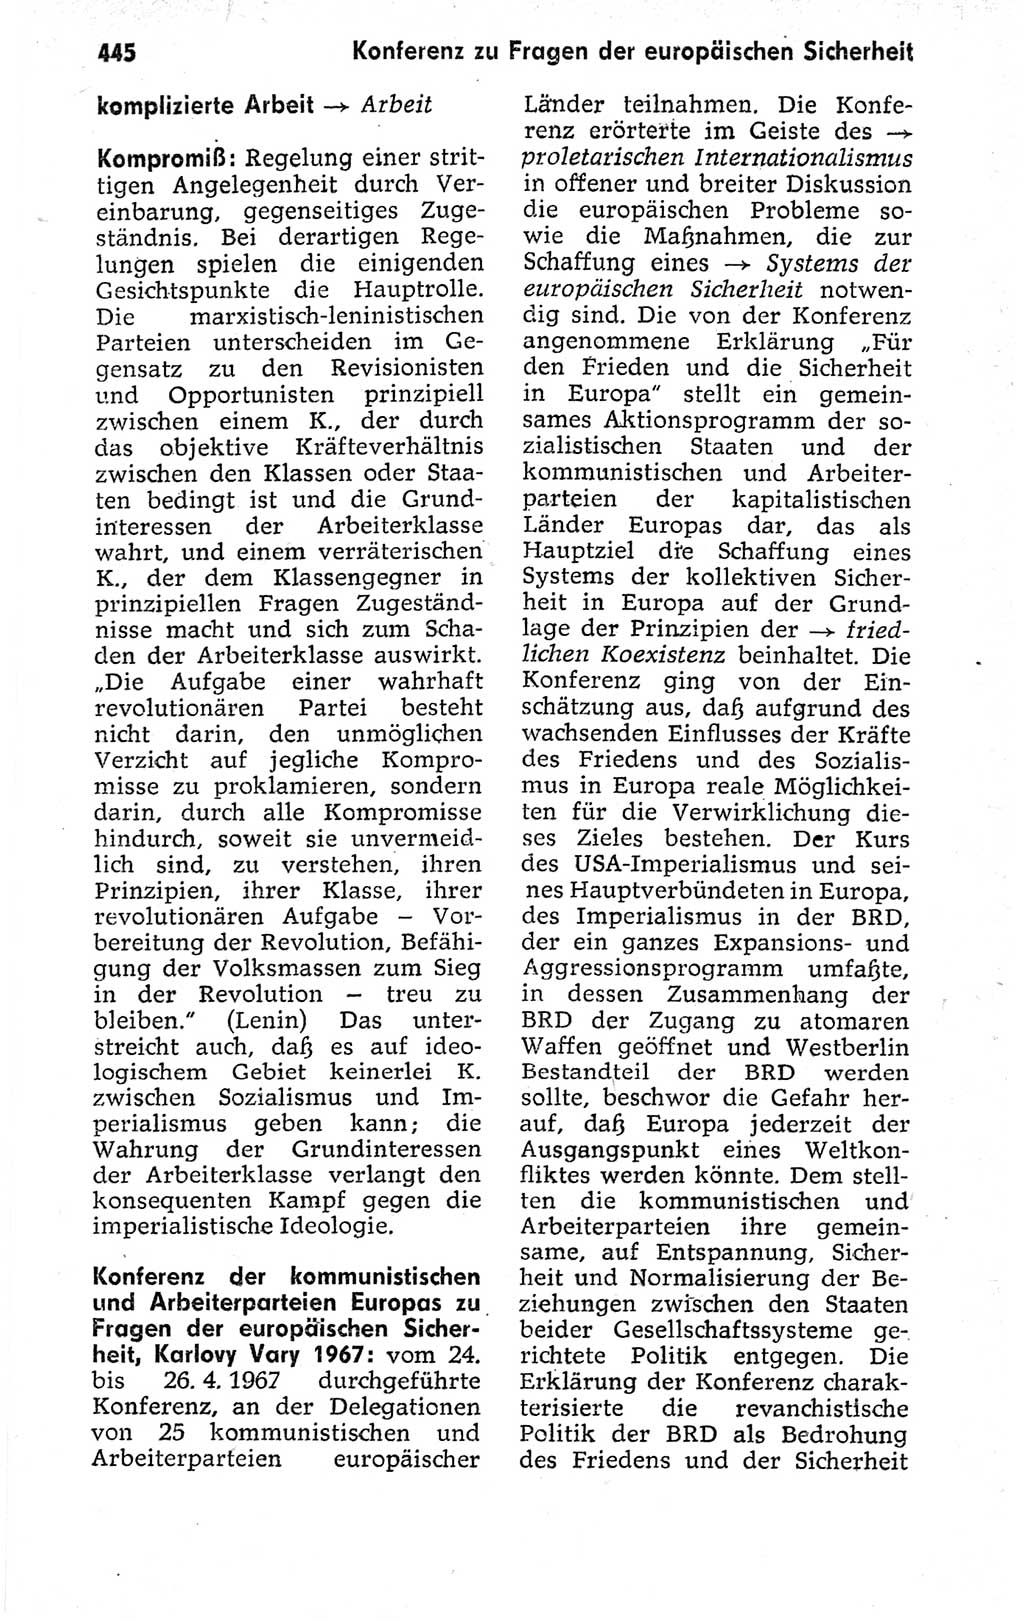 Kleines politisches Wörterbuch [Deutsche Demokratische Republik (DDR)] 1973, Seite 445 (Kl. pol. Wb. DDR 1973, S. 445)